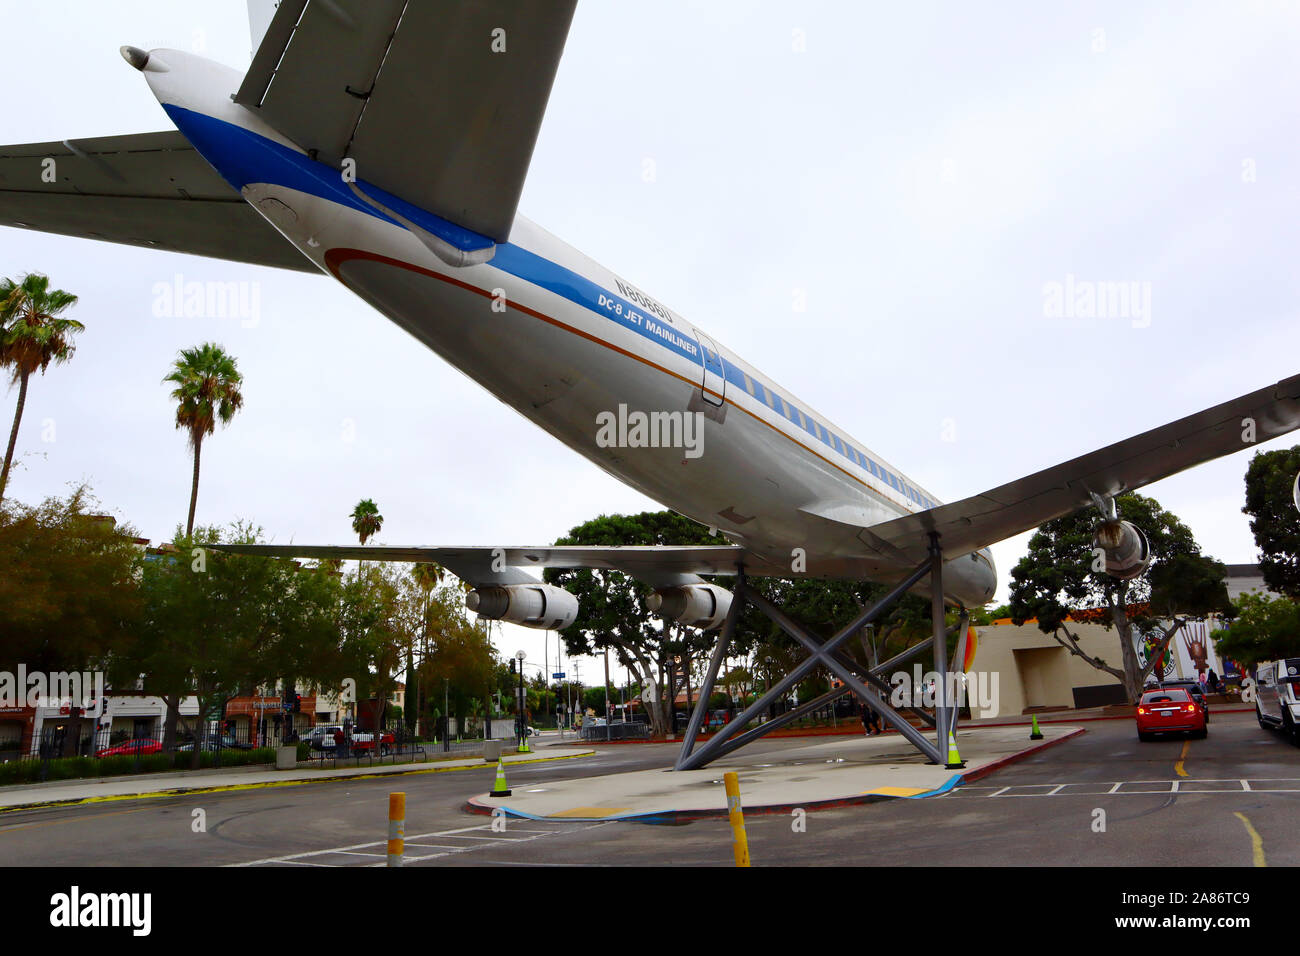 United Airlines Douglas DC-8 Jet Mainliner N8066U situé au California Science Center, Exposition Park, Los Angeles - Californie Banque D'Images